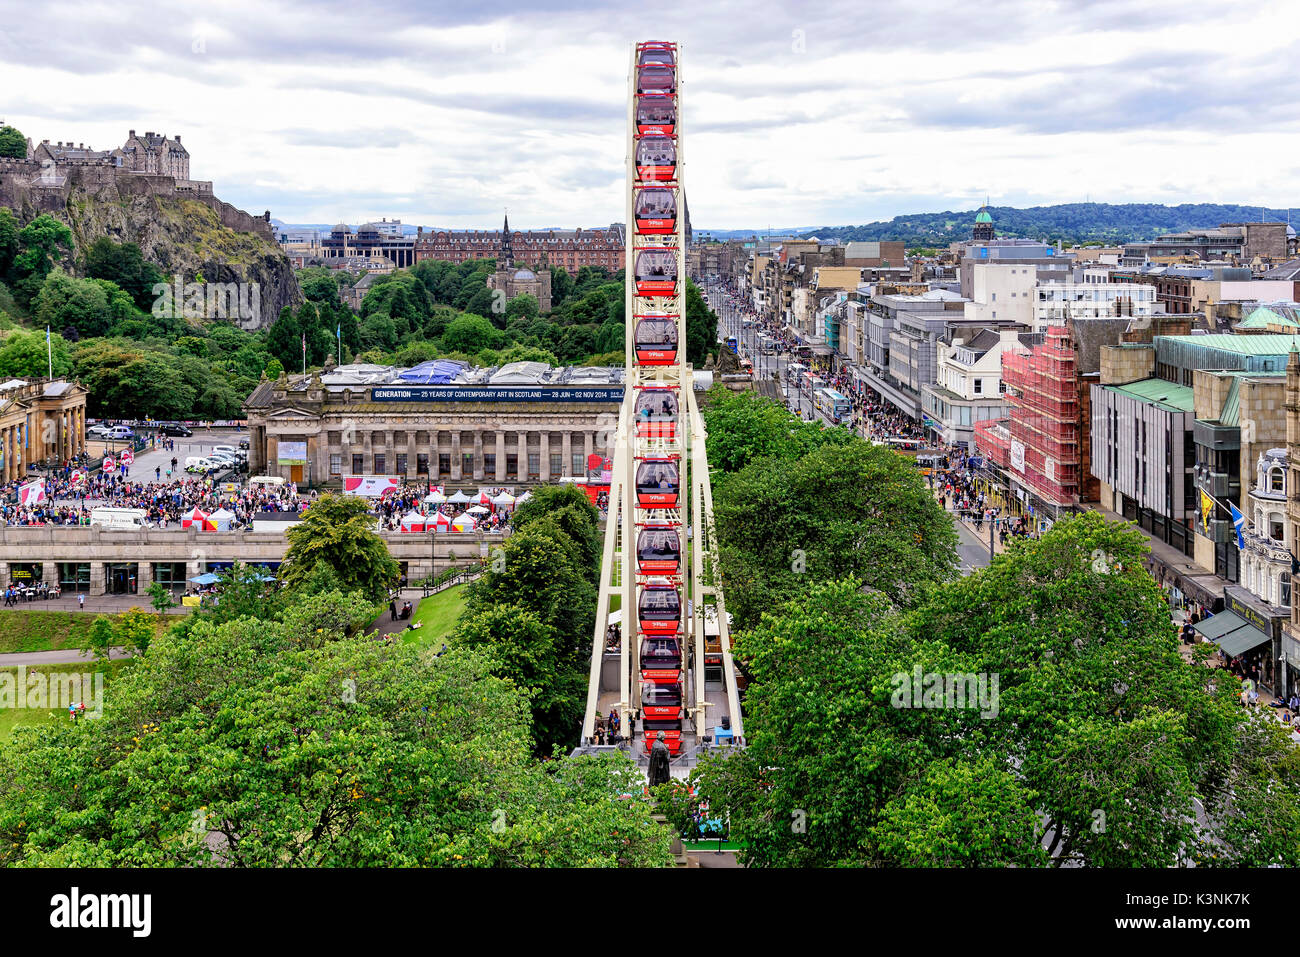 Il Festival ruota è un grande meccanica ruota panoramica Ferris, situato nel centro di Edimburgo, nella zona est di Princes Street Garden. Si tratta di una struttura temporanea Foto Stock